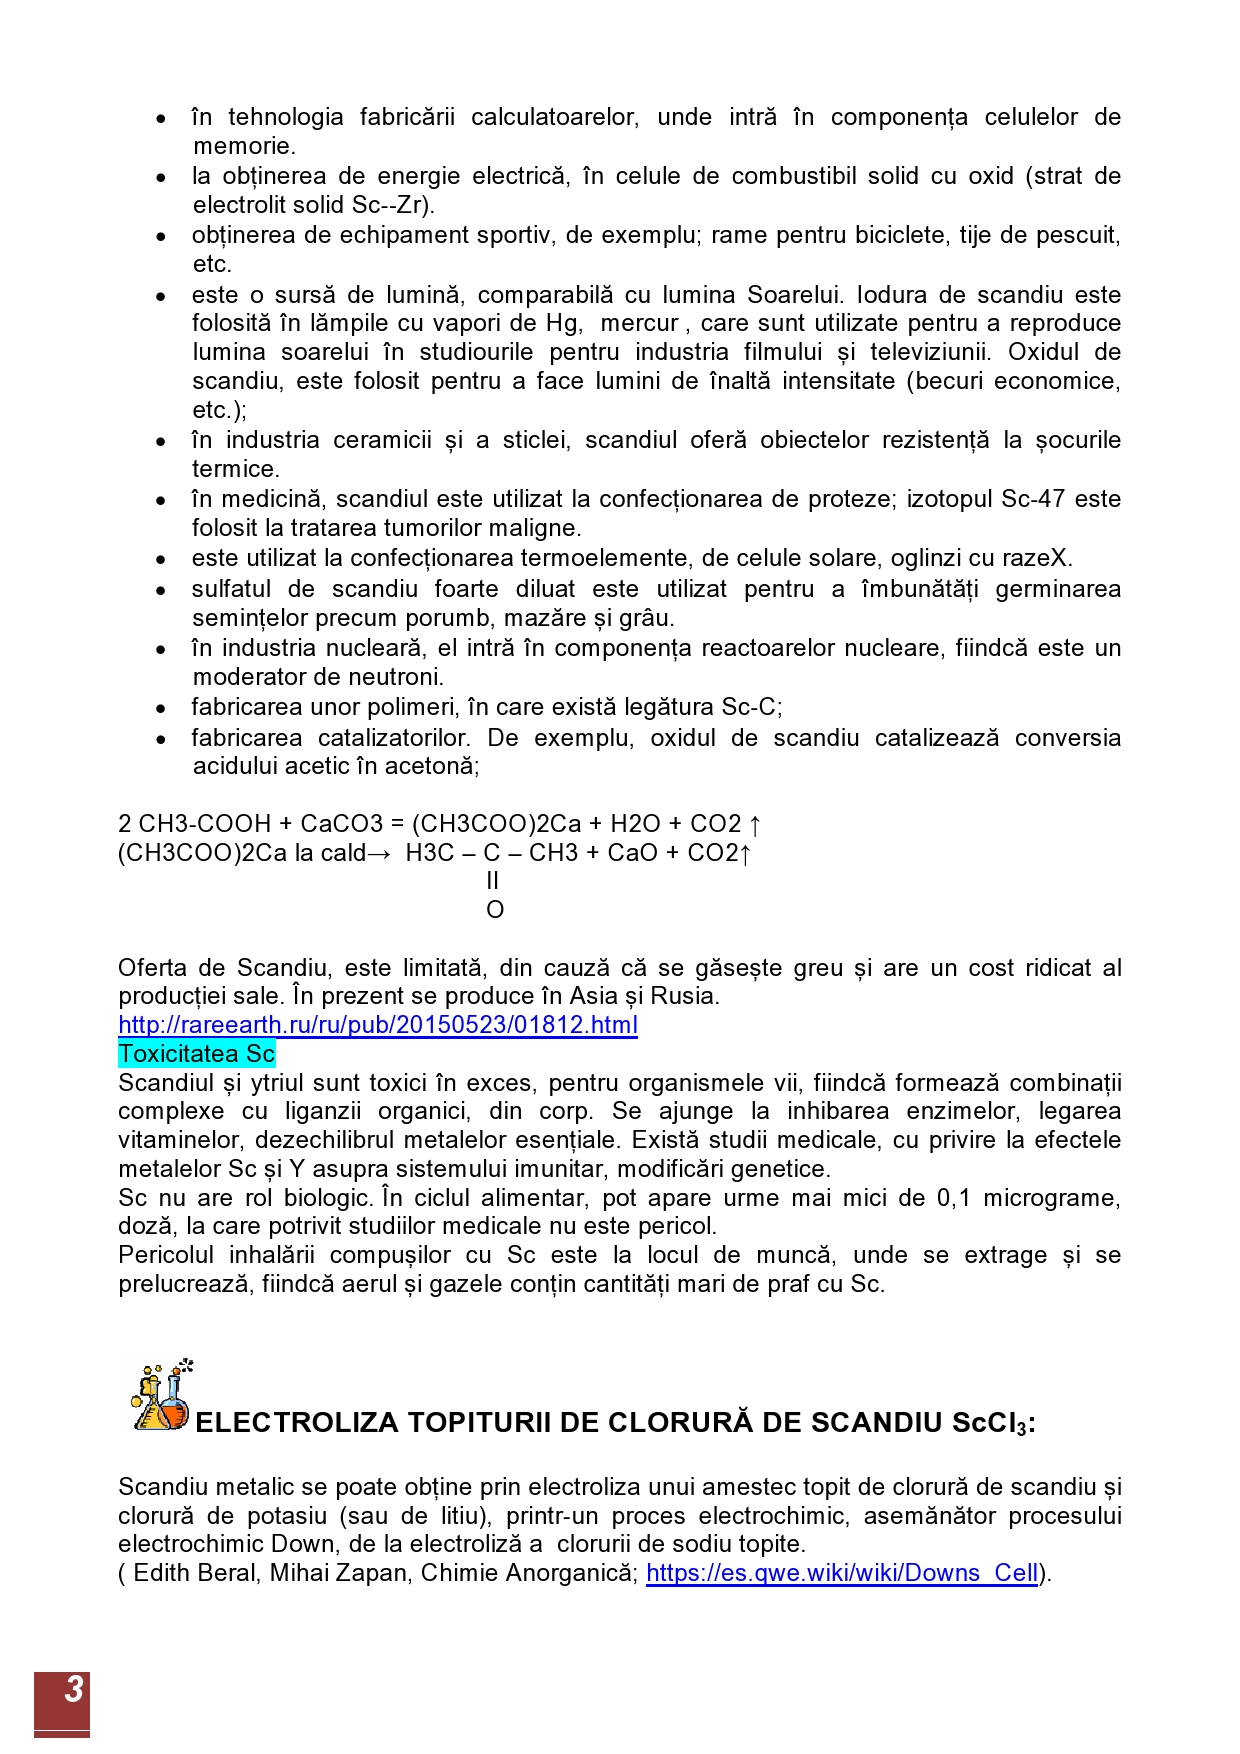 ELECTROLIZA CLORURII DE SCANDIU TOPITE-page0003